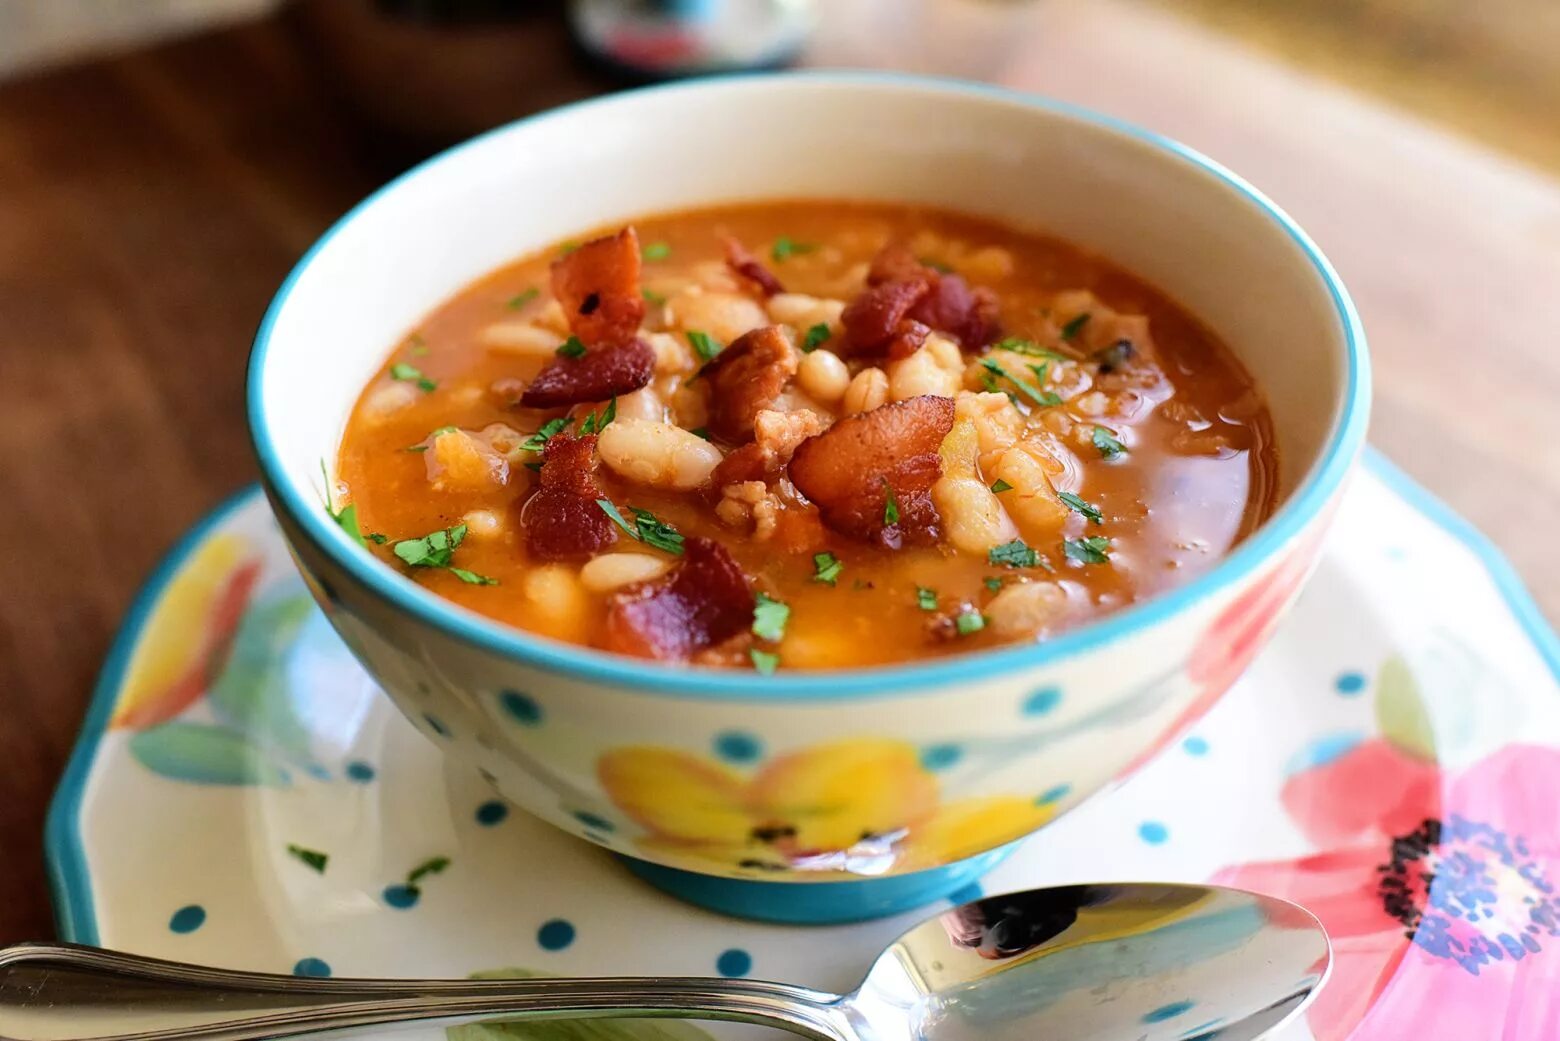 Chmcl soup. Аргентинский фасолевый суп. Фасолевая похлебка. Суп фасолевый из консервированной красной фасоли. Мексиканский фасолевый суп.